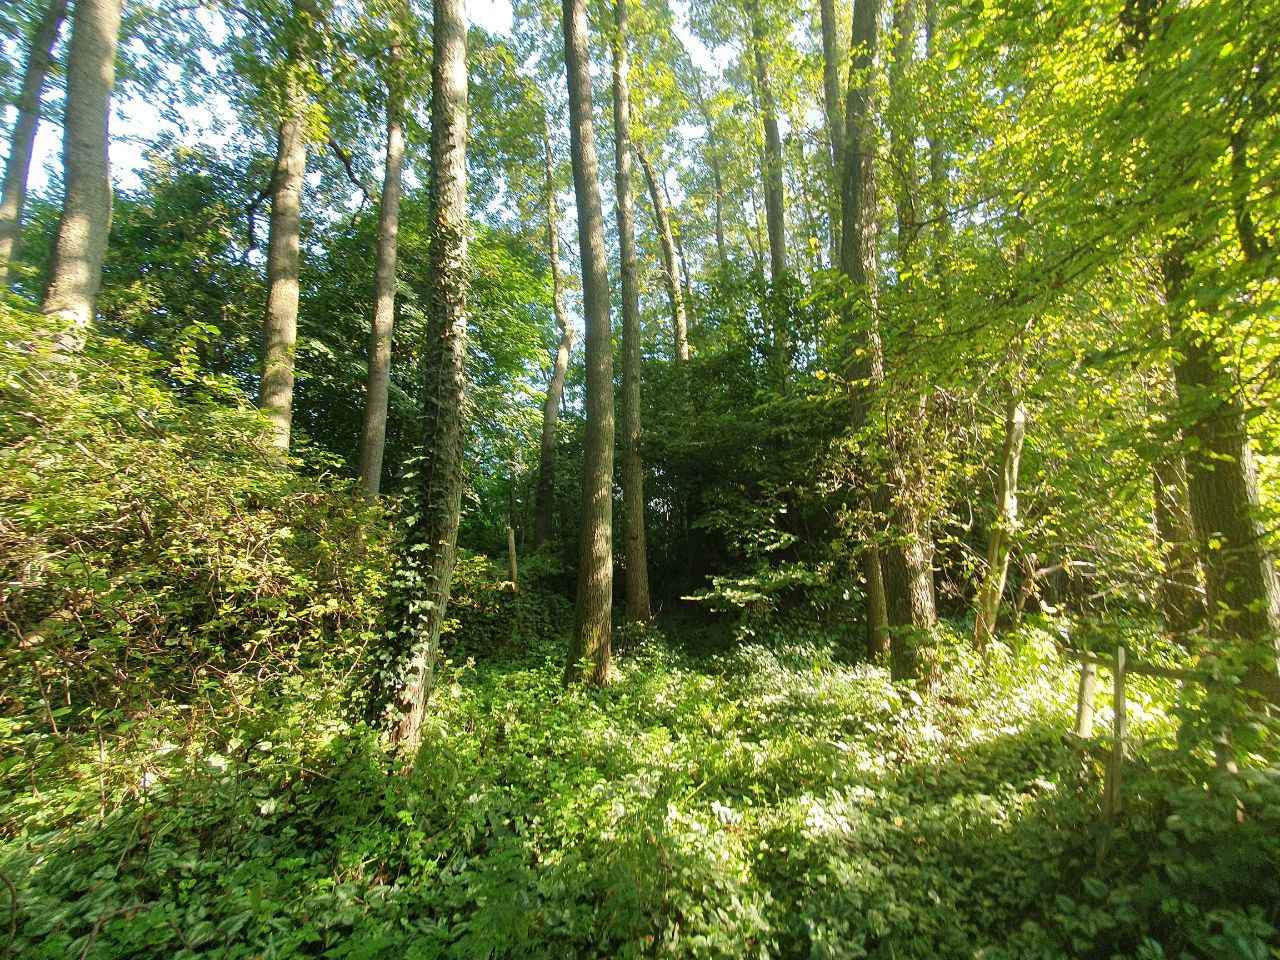 Wiejska posiadłość z lasem, rzeką i ogrodem Świeszyno - zdjęcie 9